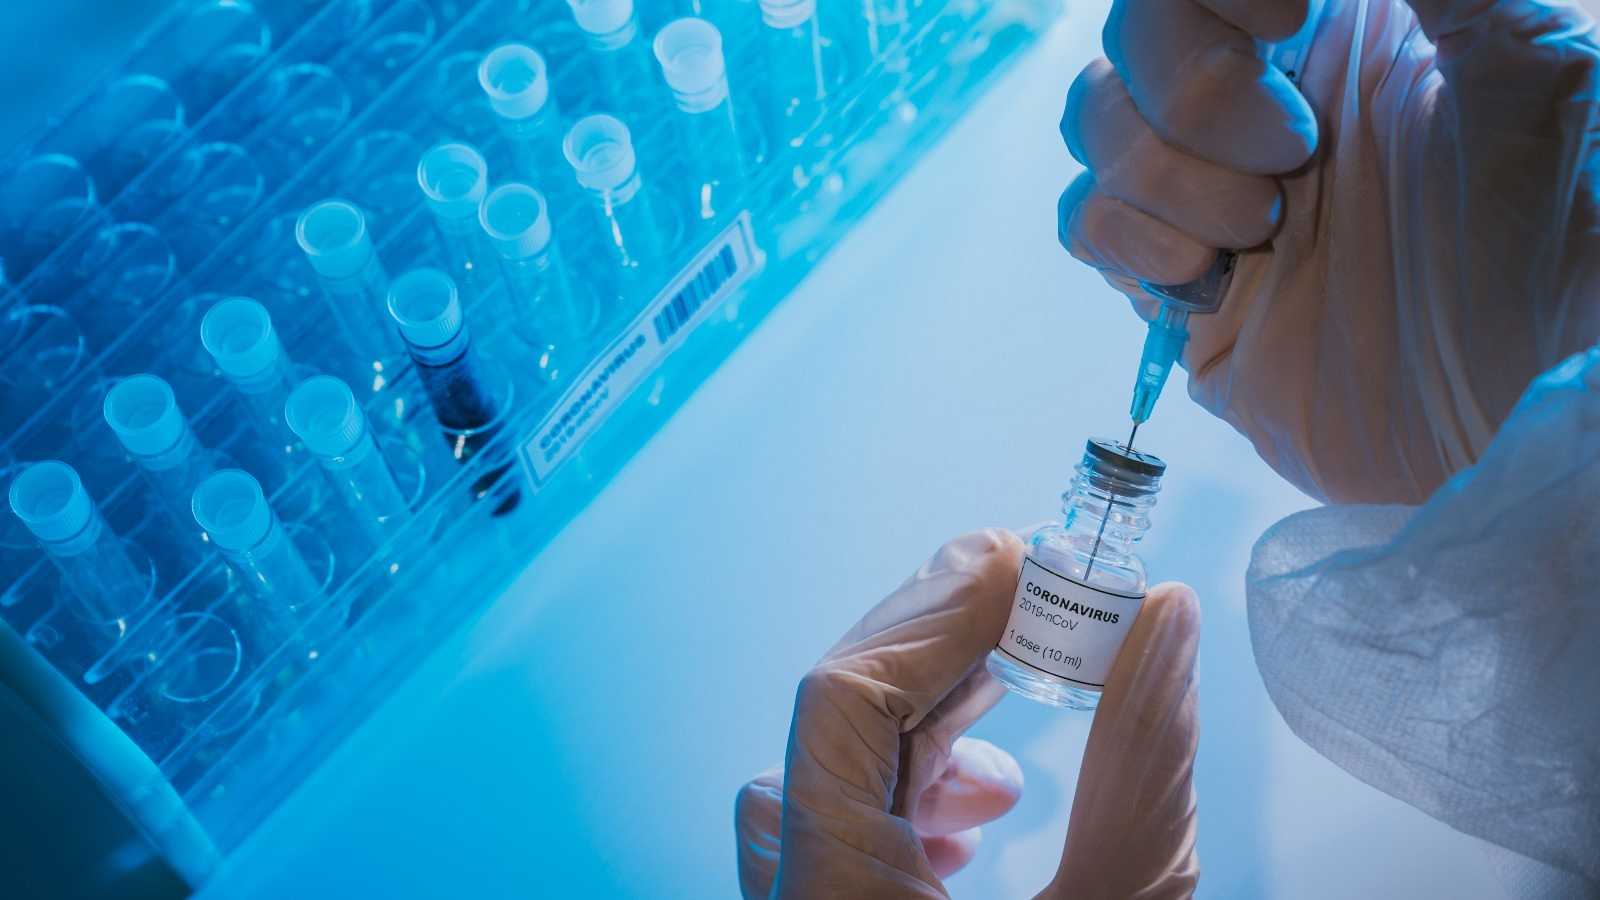 La EMA comienza la evaluación de la vacuna de Sanofi Pasteur